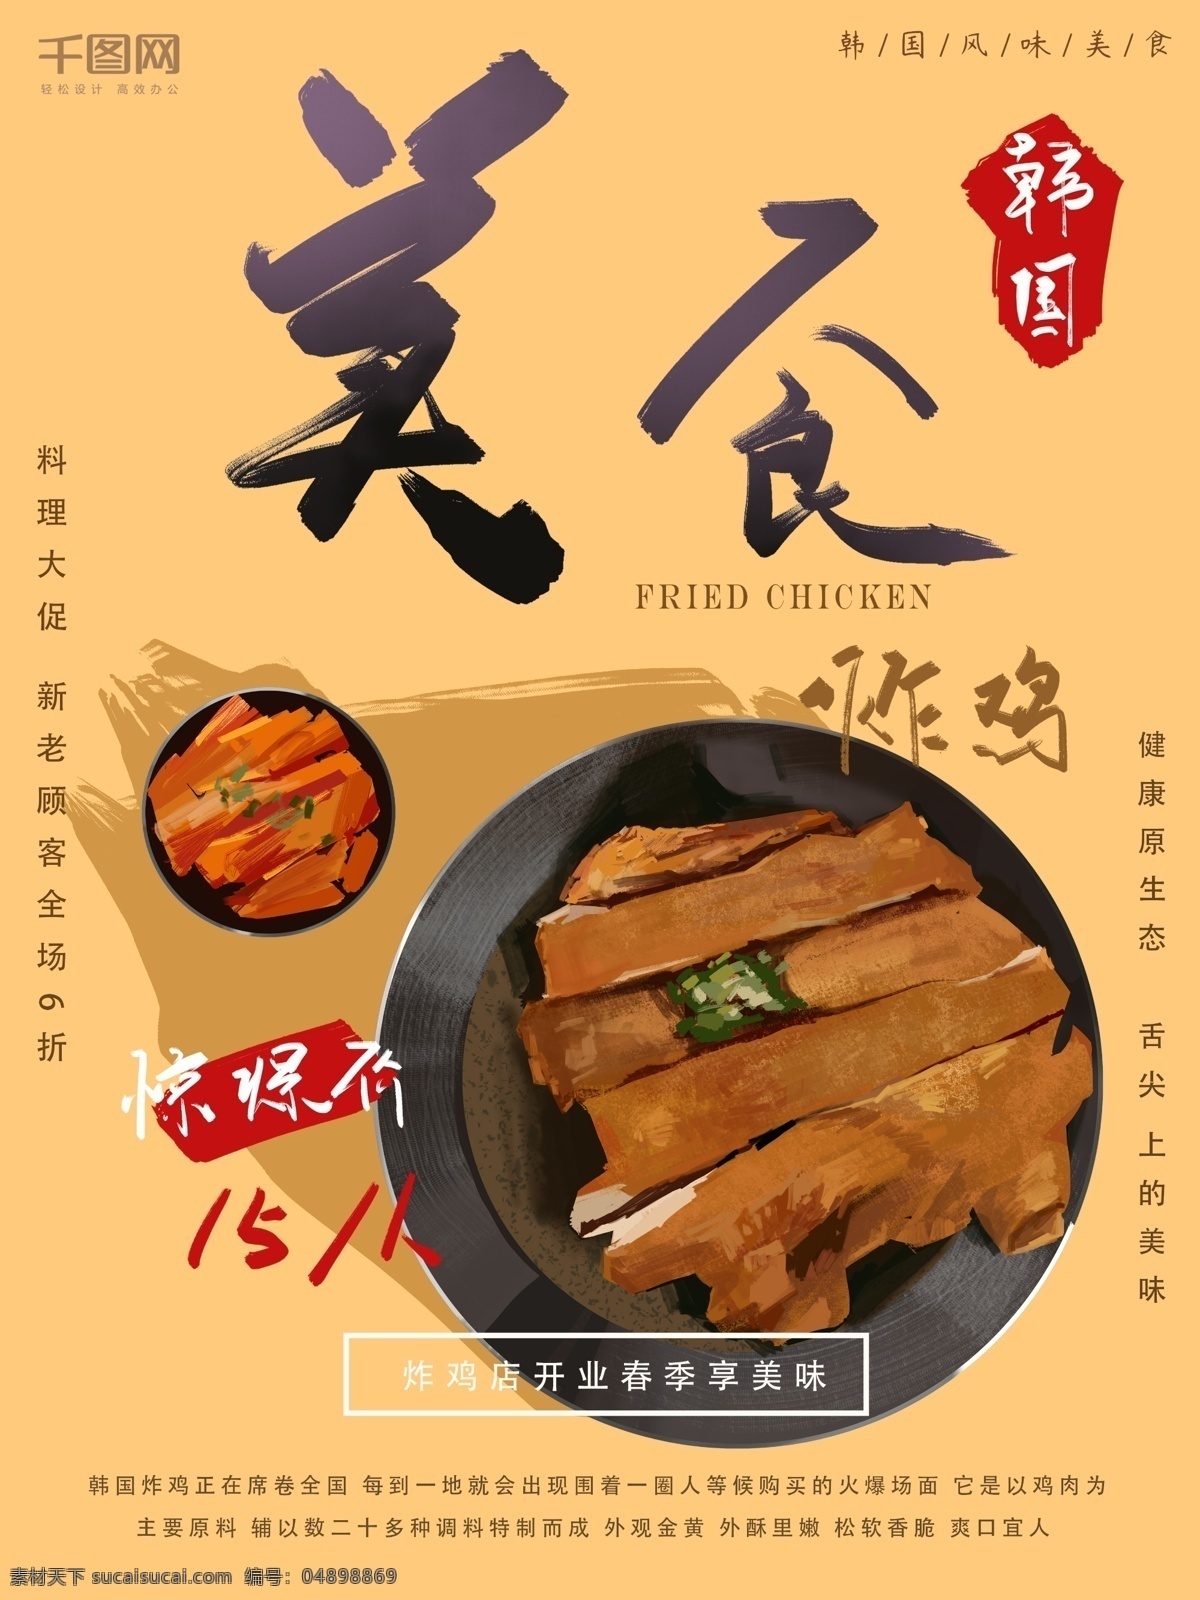 韩国 美食 炸鸡 海报 宣传 促销 美味 手绘 插画 朋友圈